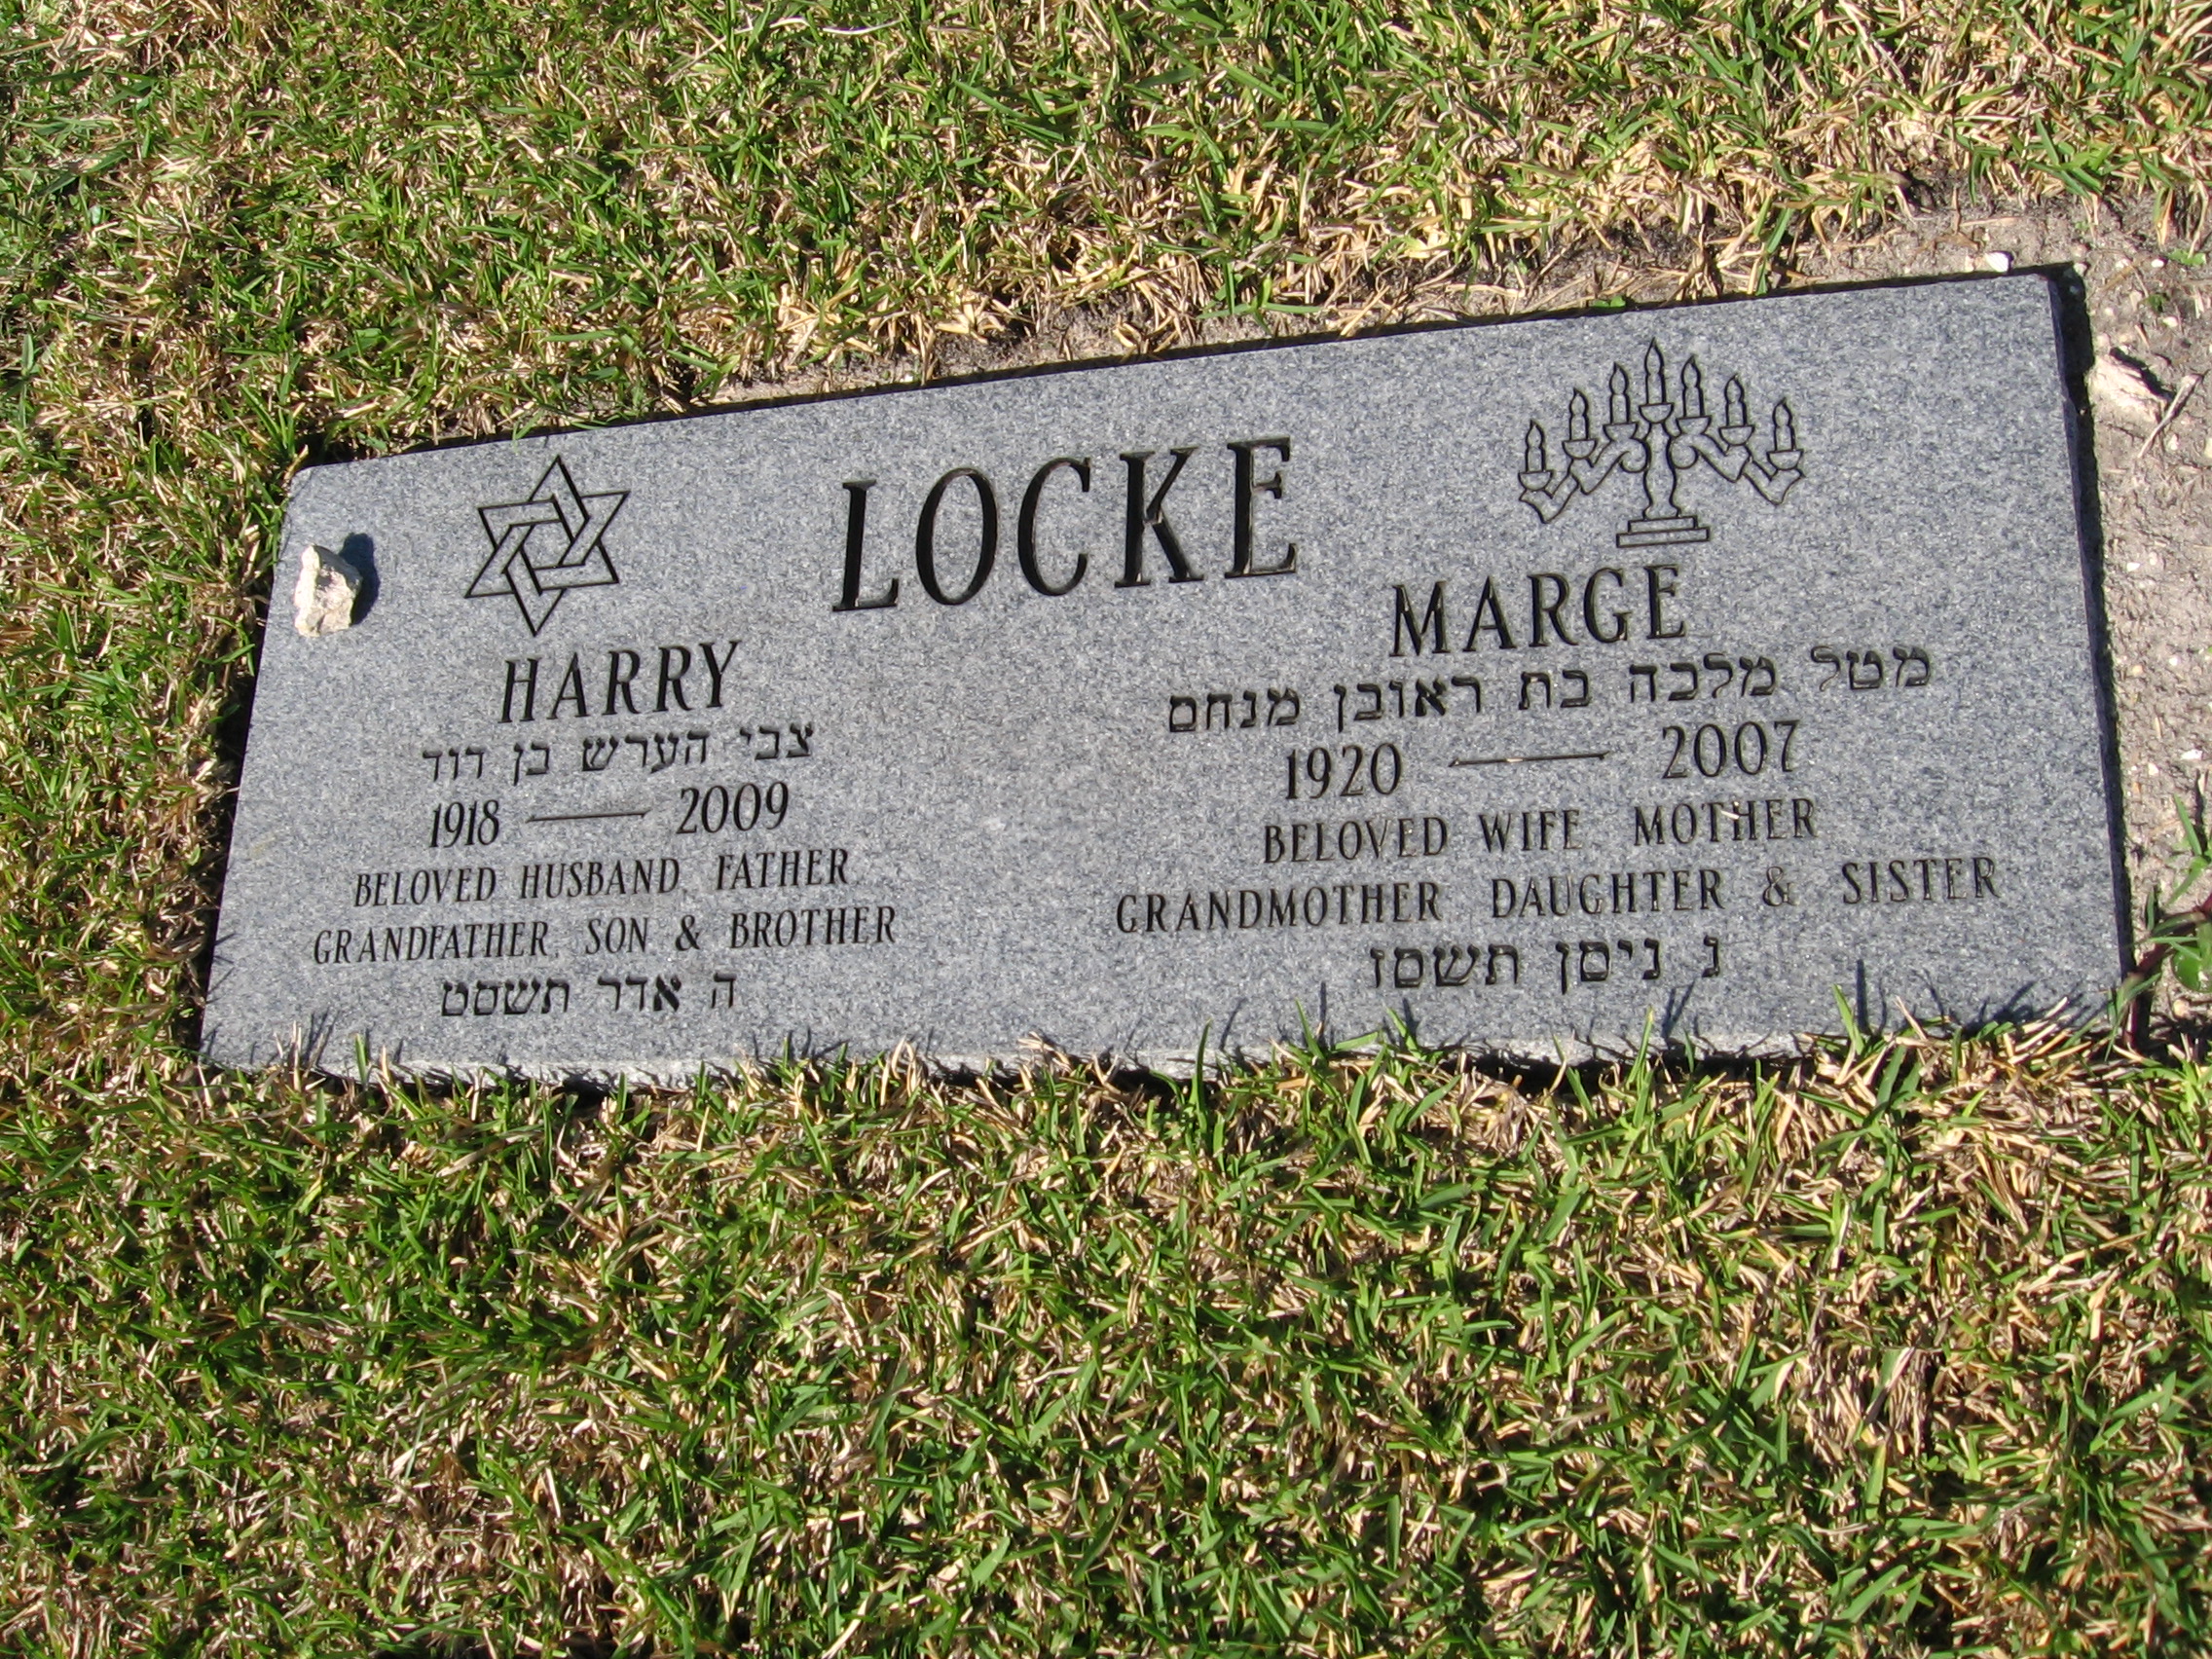 Marge Locke